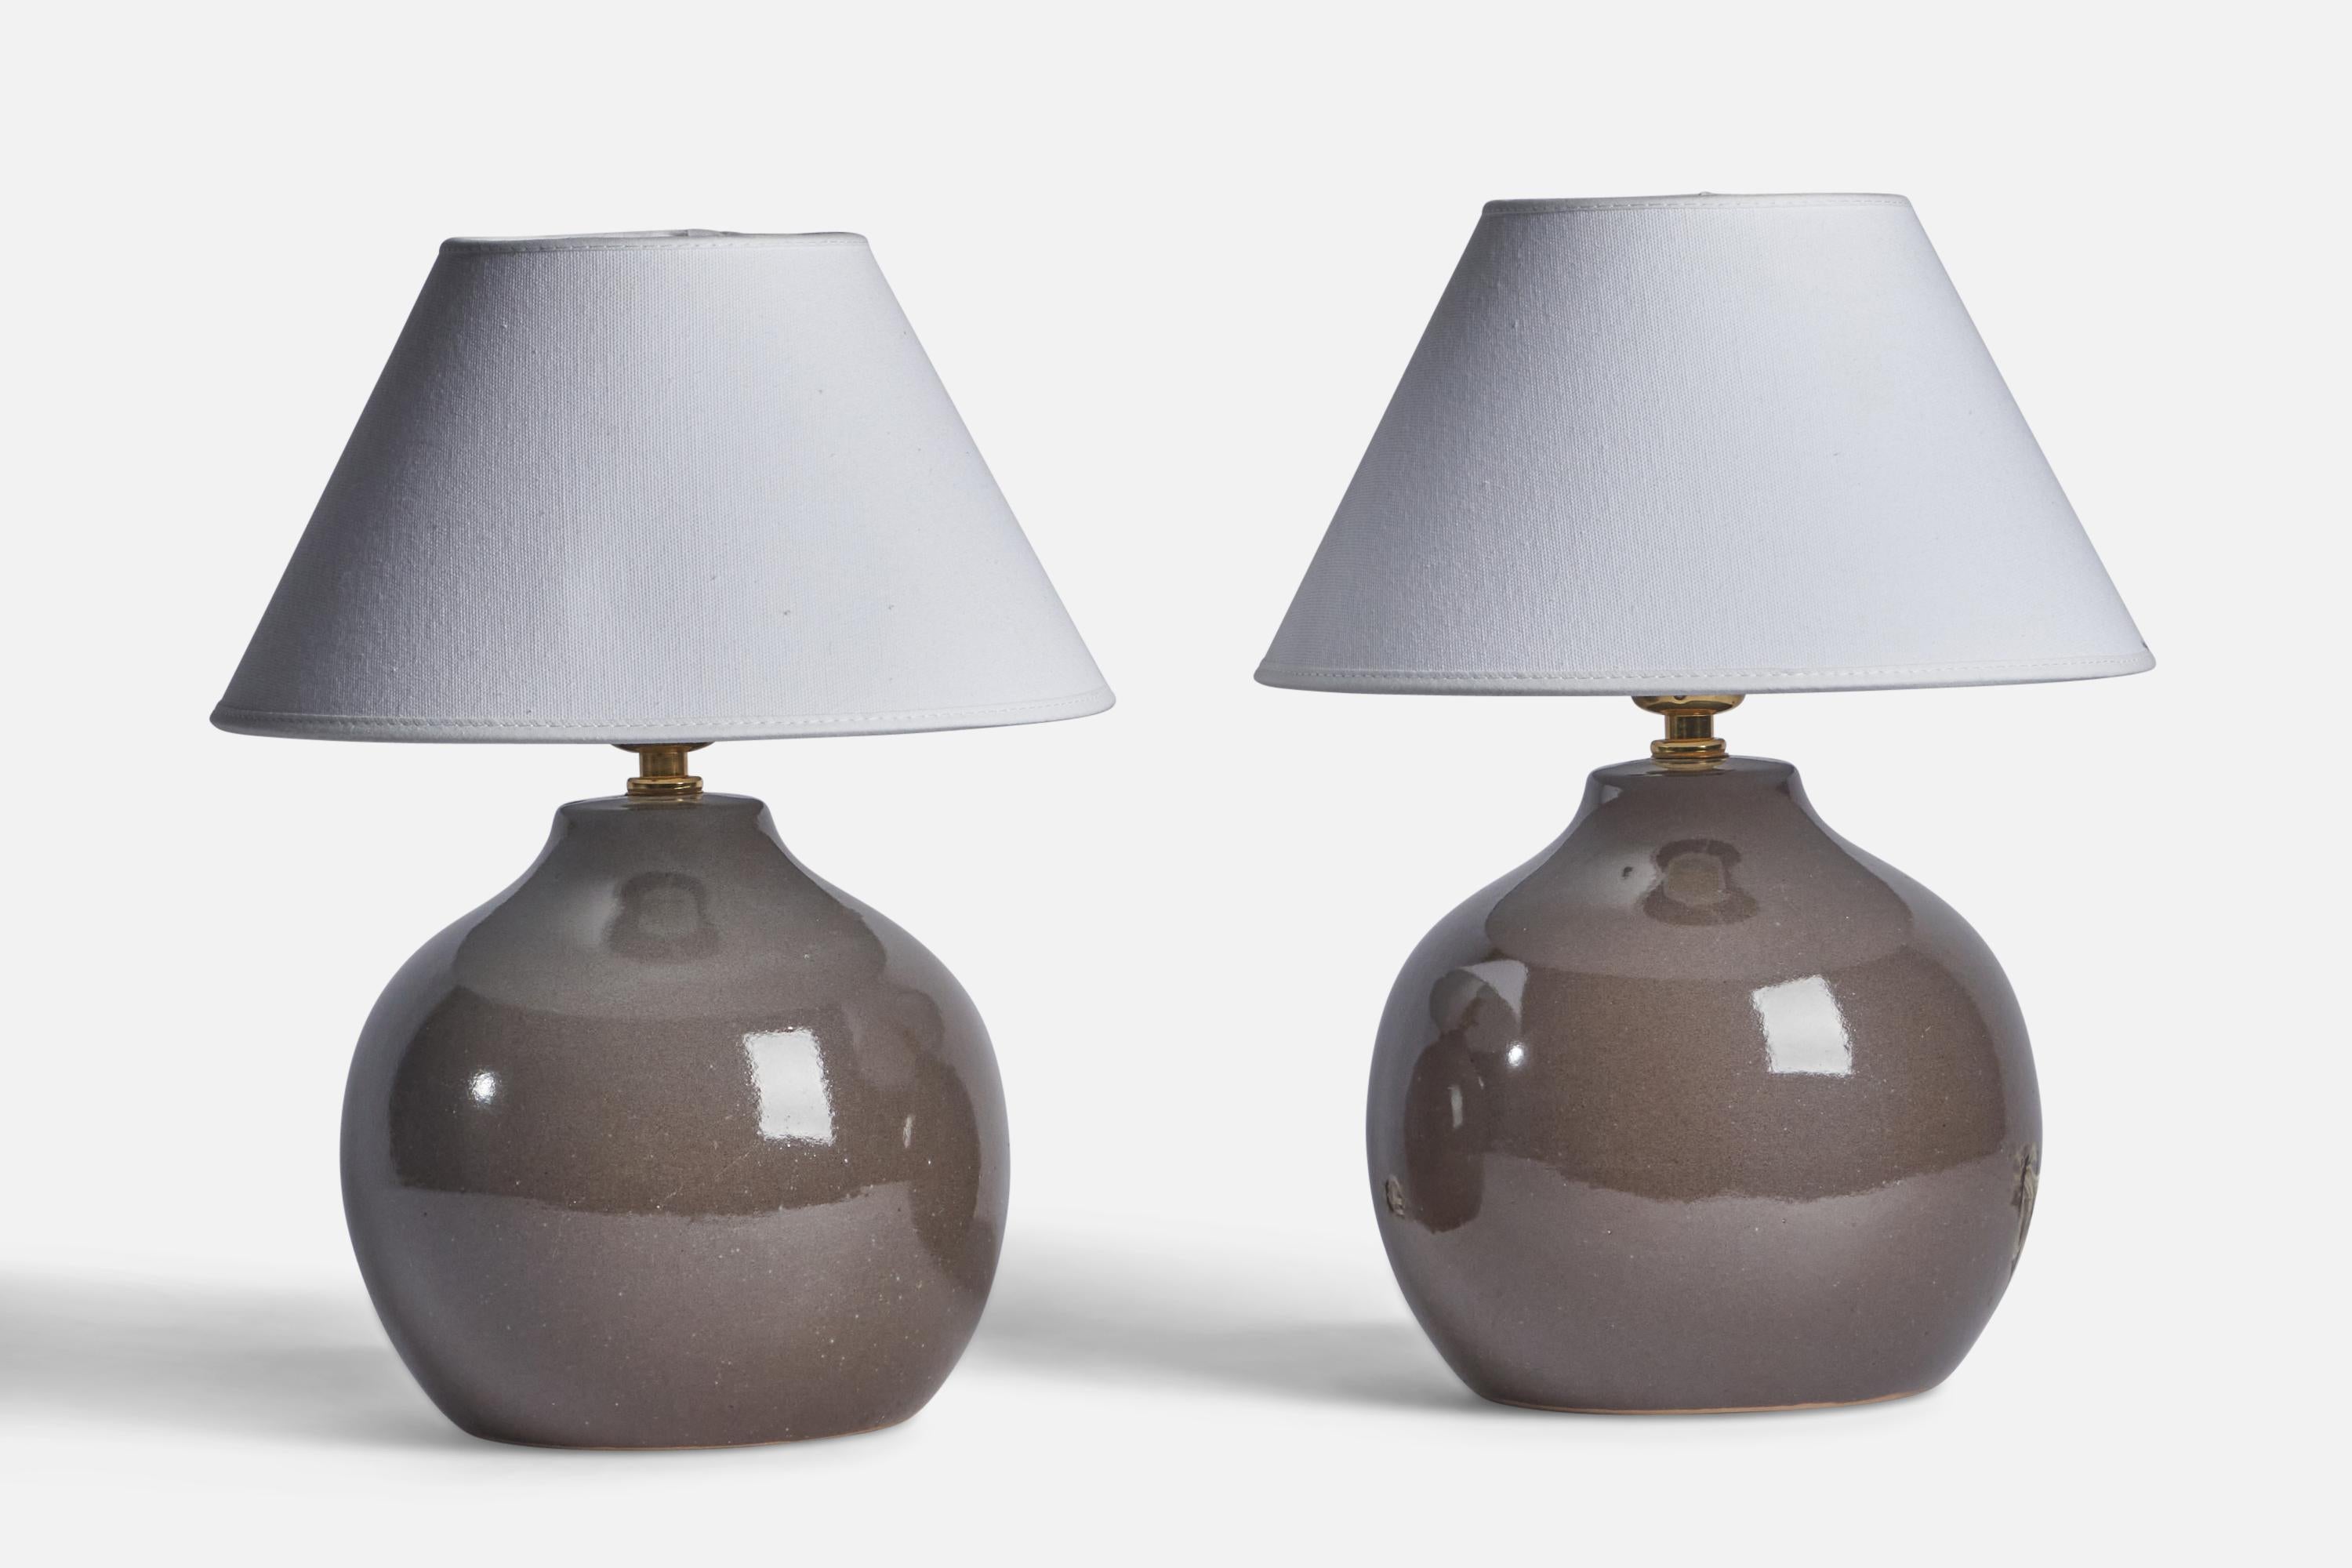 Paire de lampes de table en céramique émaillée grise conçues par Jane & Gordon Martz et produites par Marshall Studios, États-Unis, années 1960.

Dimensions de la lampe (pouces) : 9.75